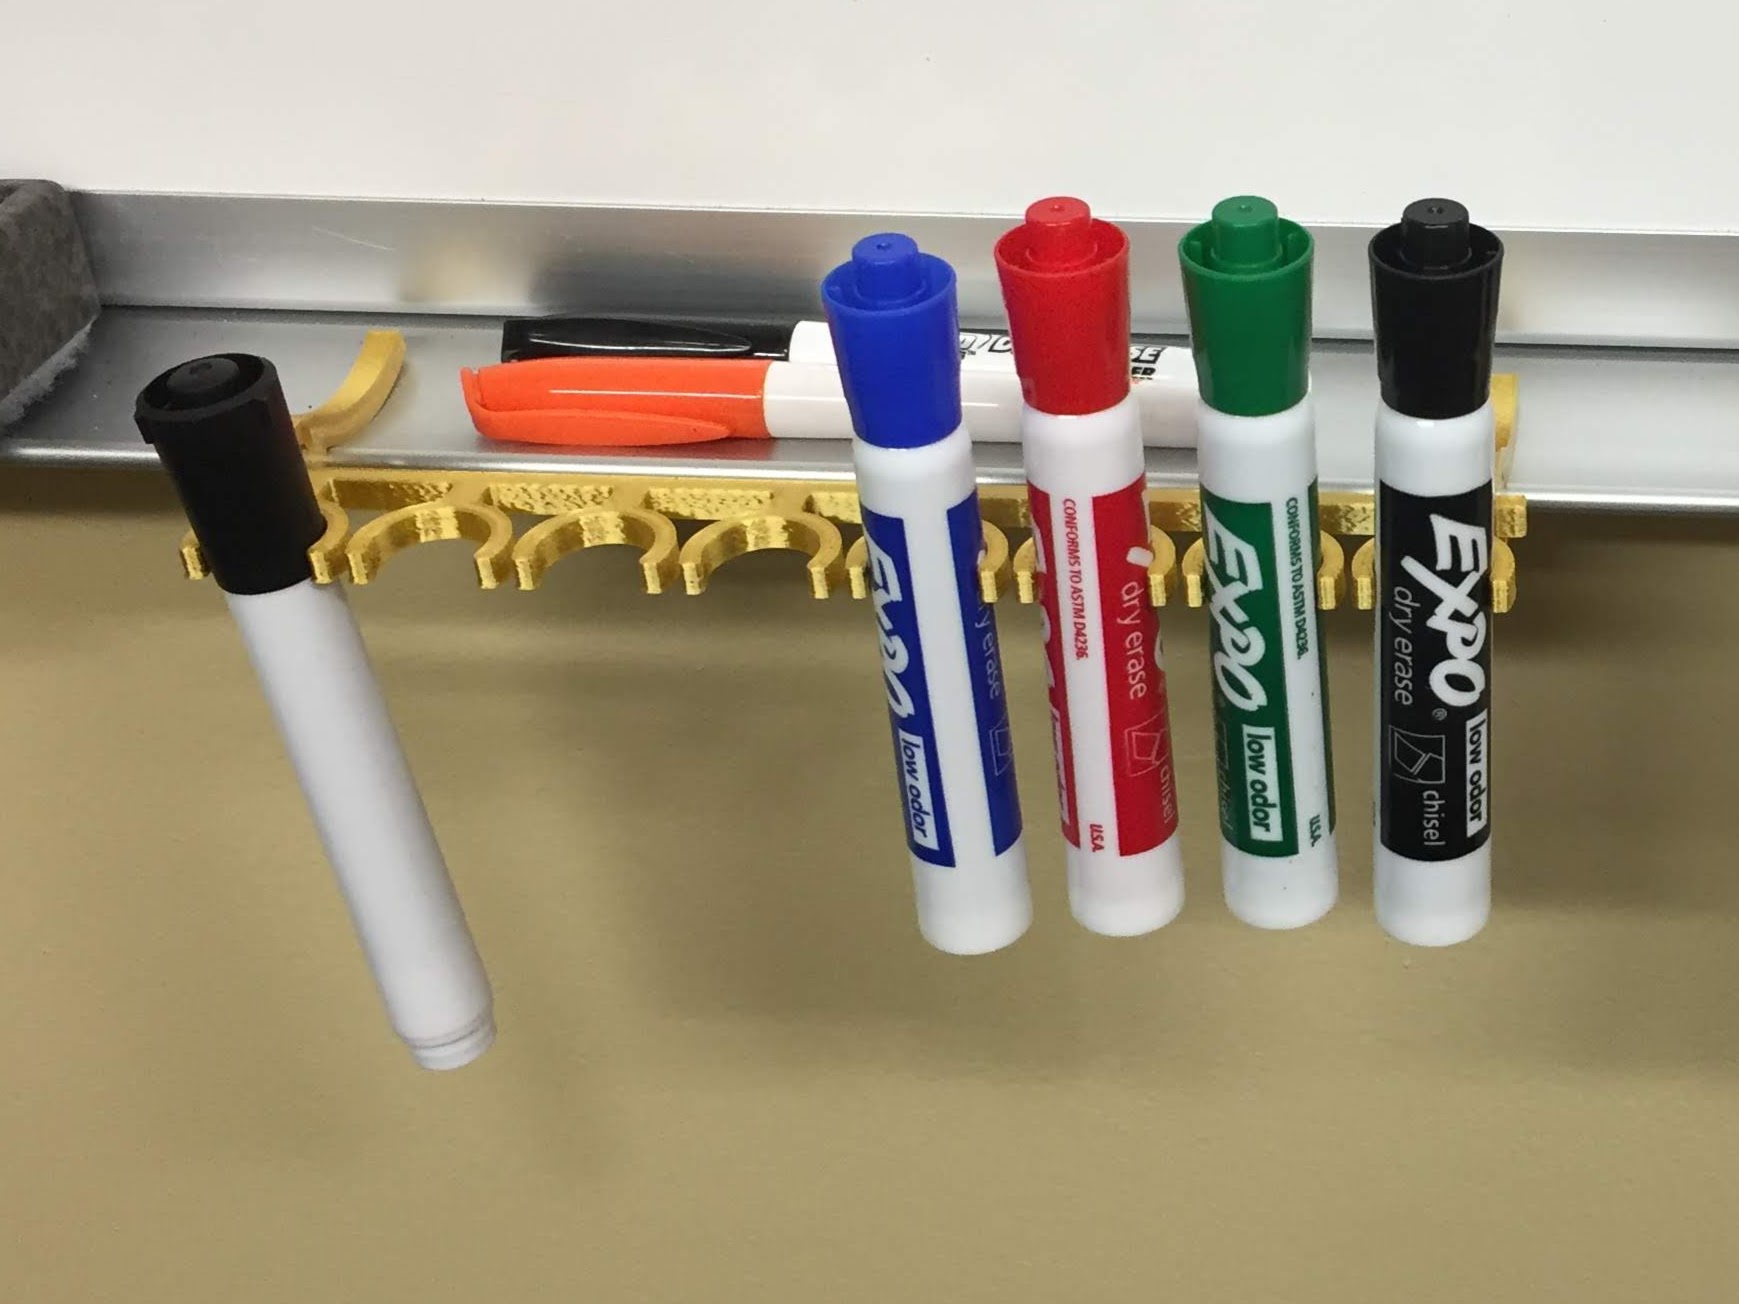 Quartet Dry Erase Marker Holder by phidesigned, Download free STL model